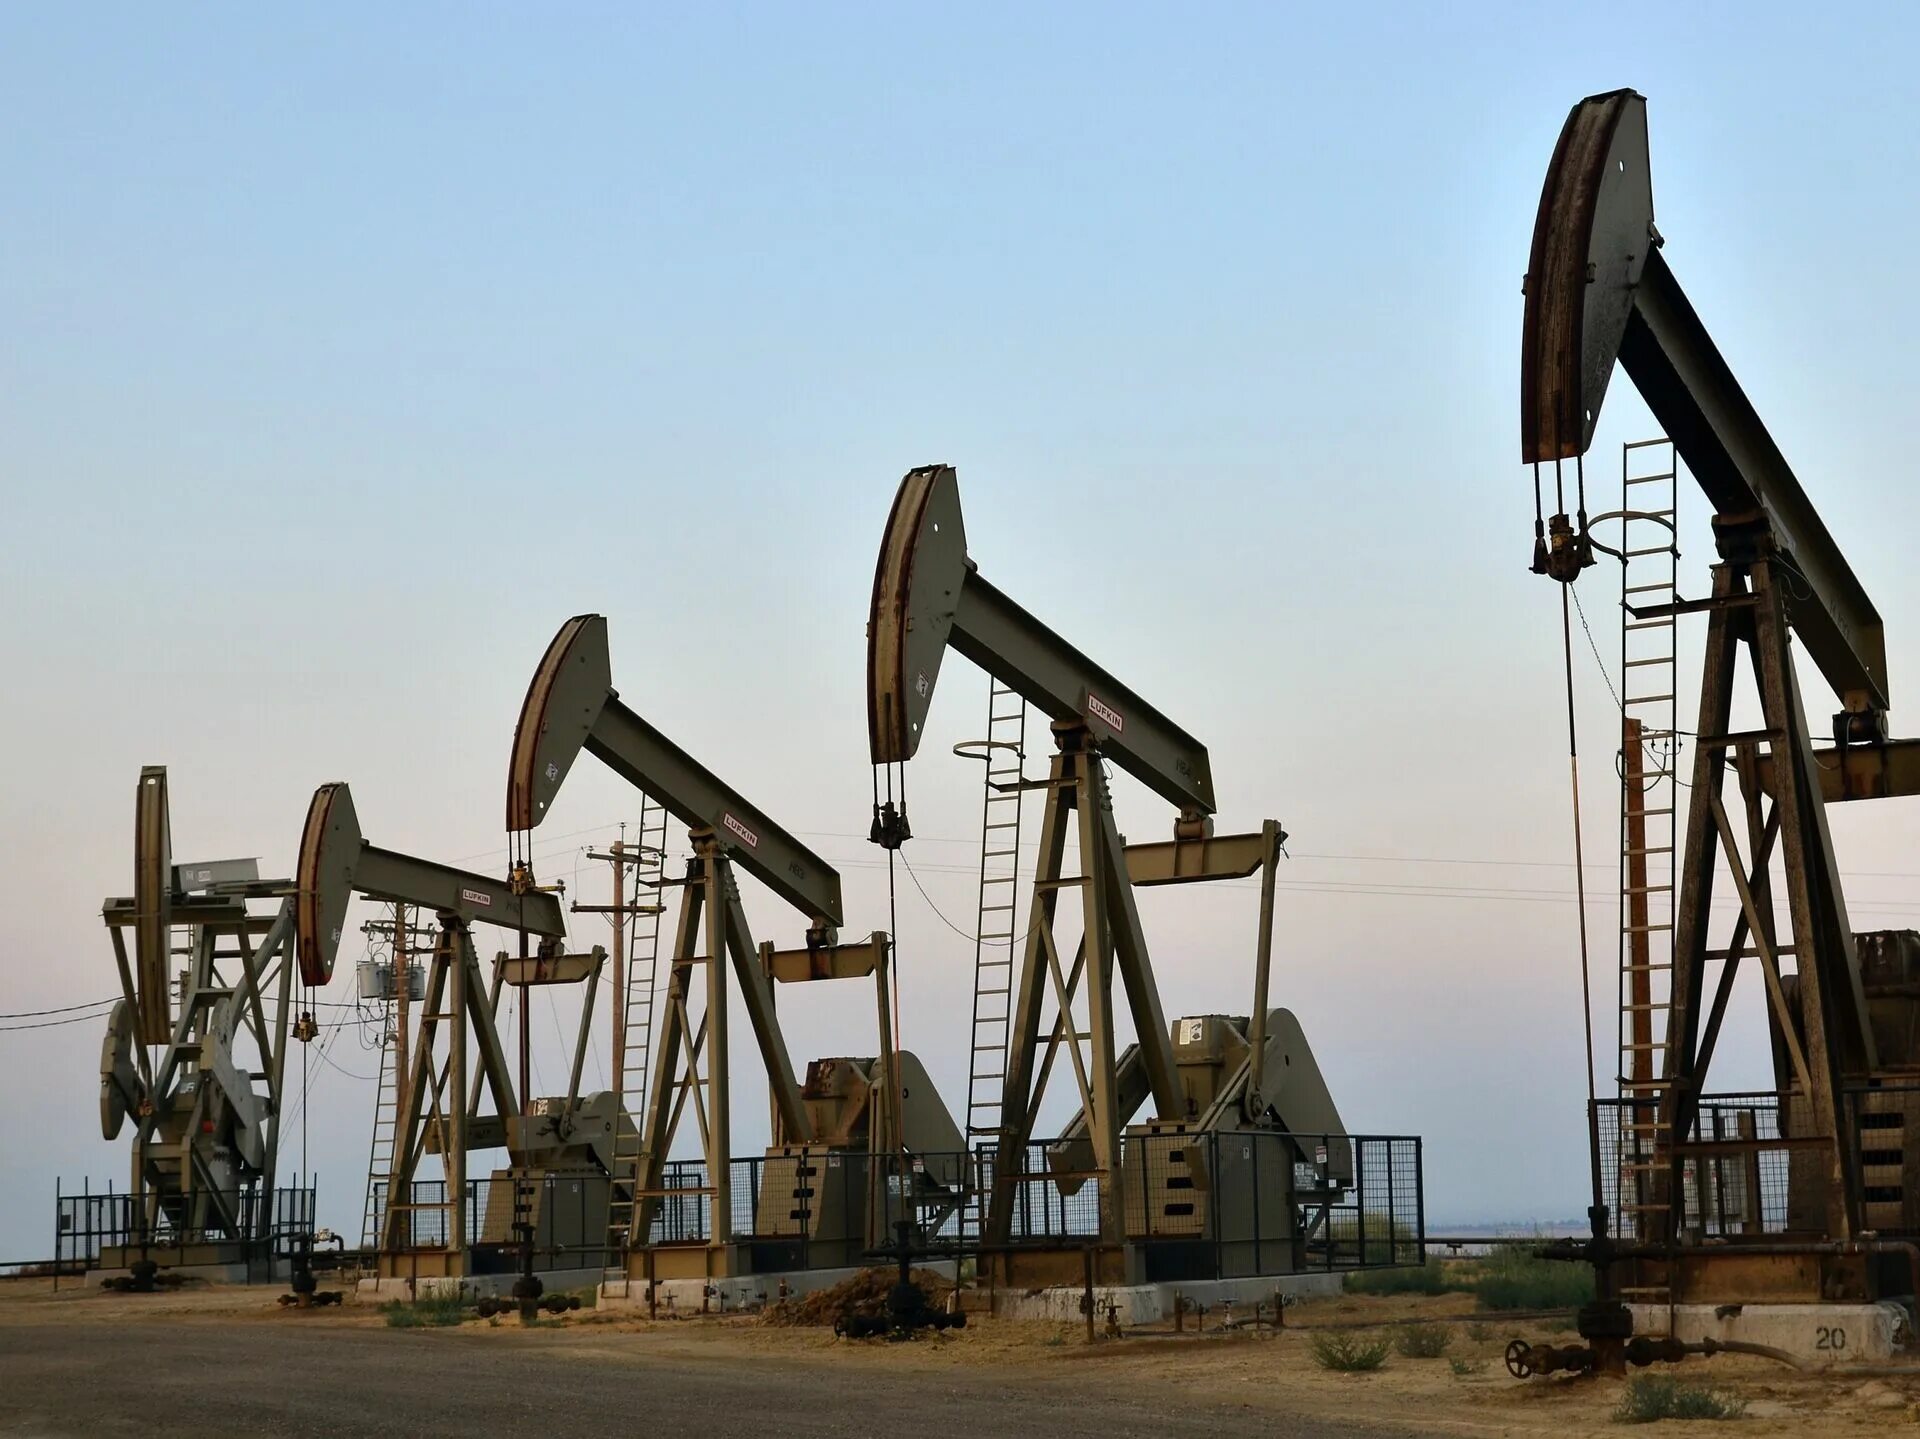 Azeri Light марка нефти. Нефтедобывающие вышки США. Добыча нефти в России. Петроль нефть.